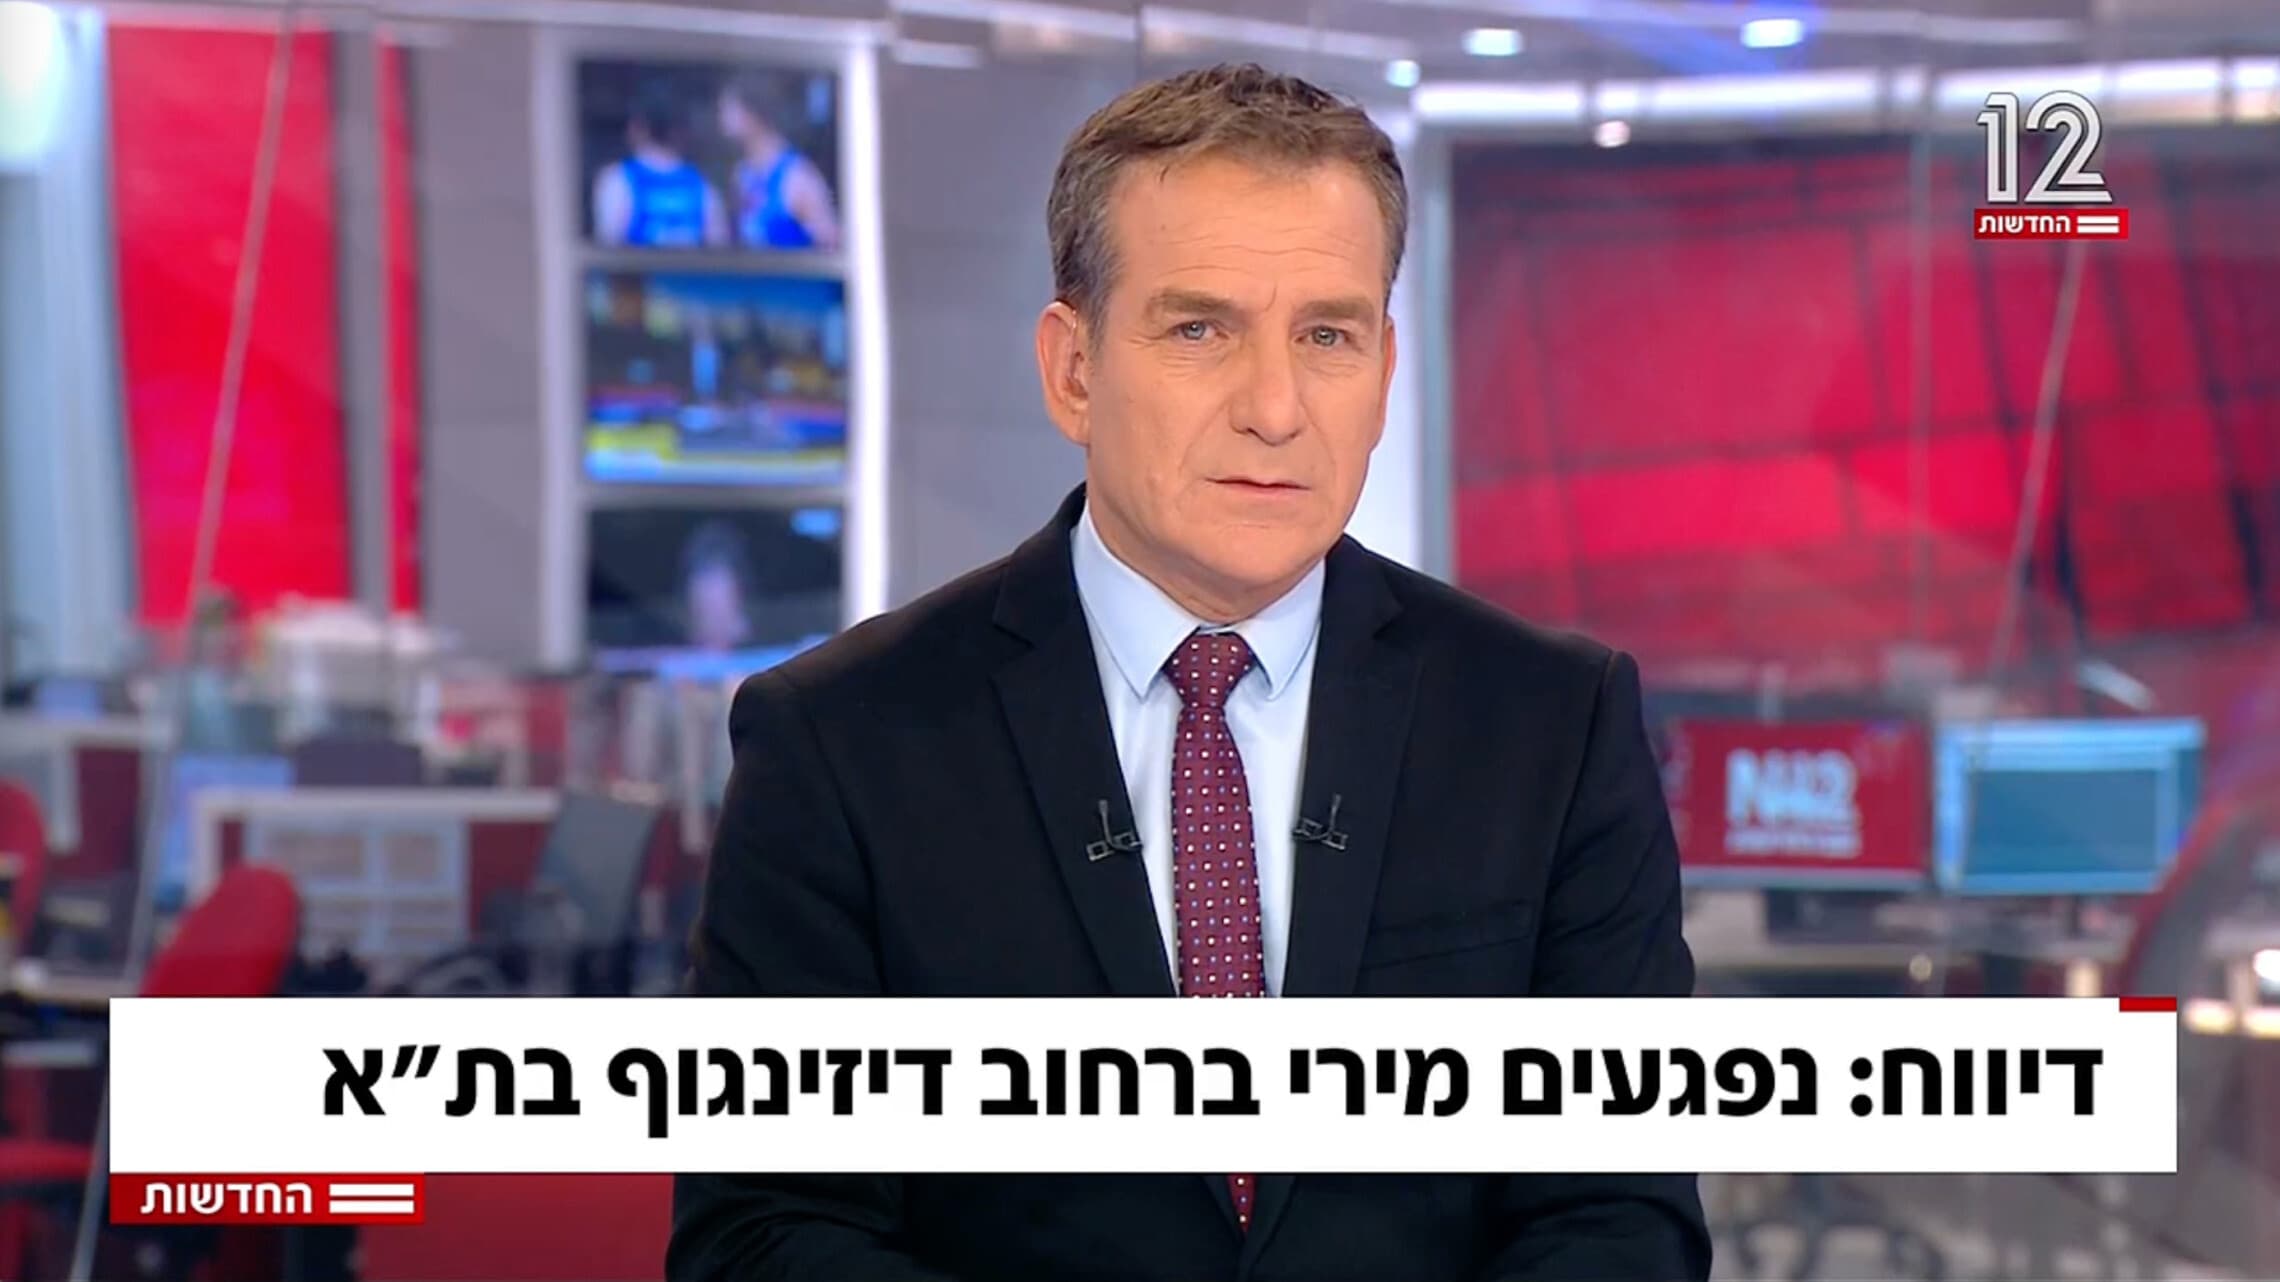 דני קושמרו מוביל את שידור חדשות 12 בליל הפיגוע ברחוב דיזנגוף בתל אביב, 7 באפריל 2022 (צילום: צילום מסך, ערוץ 12)